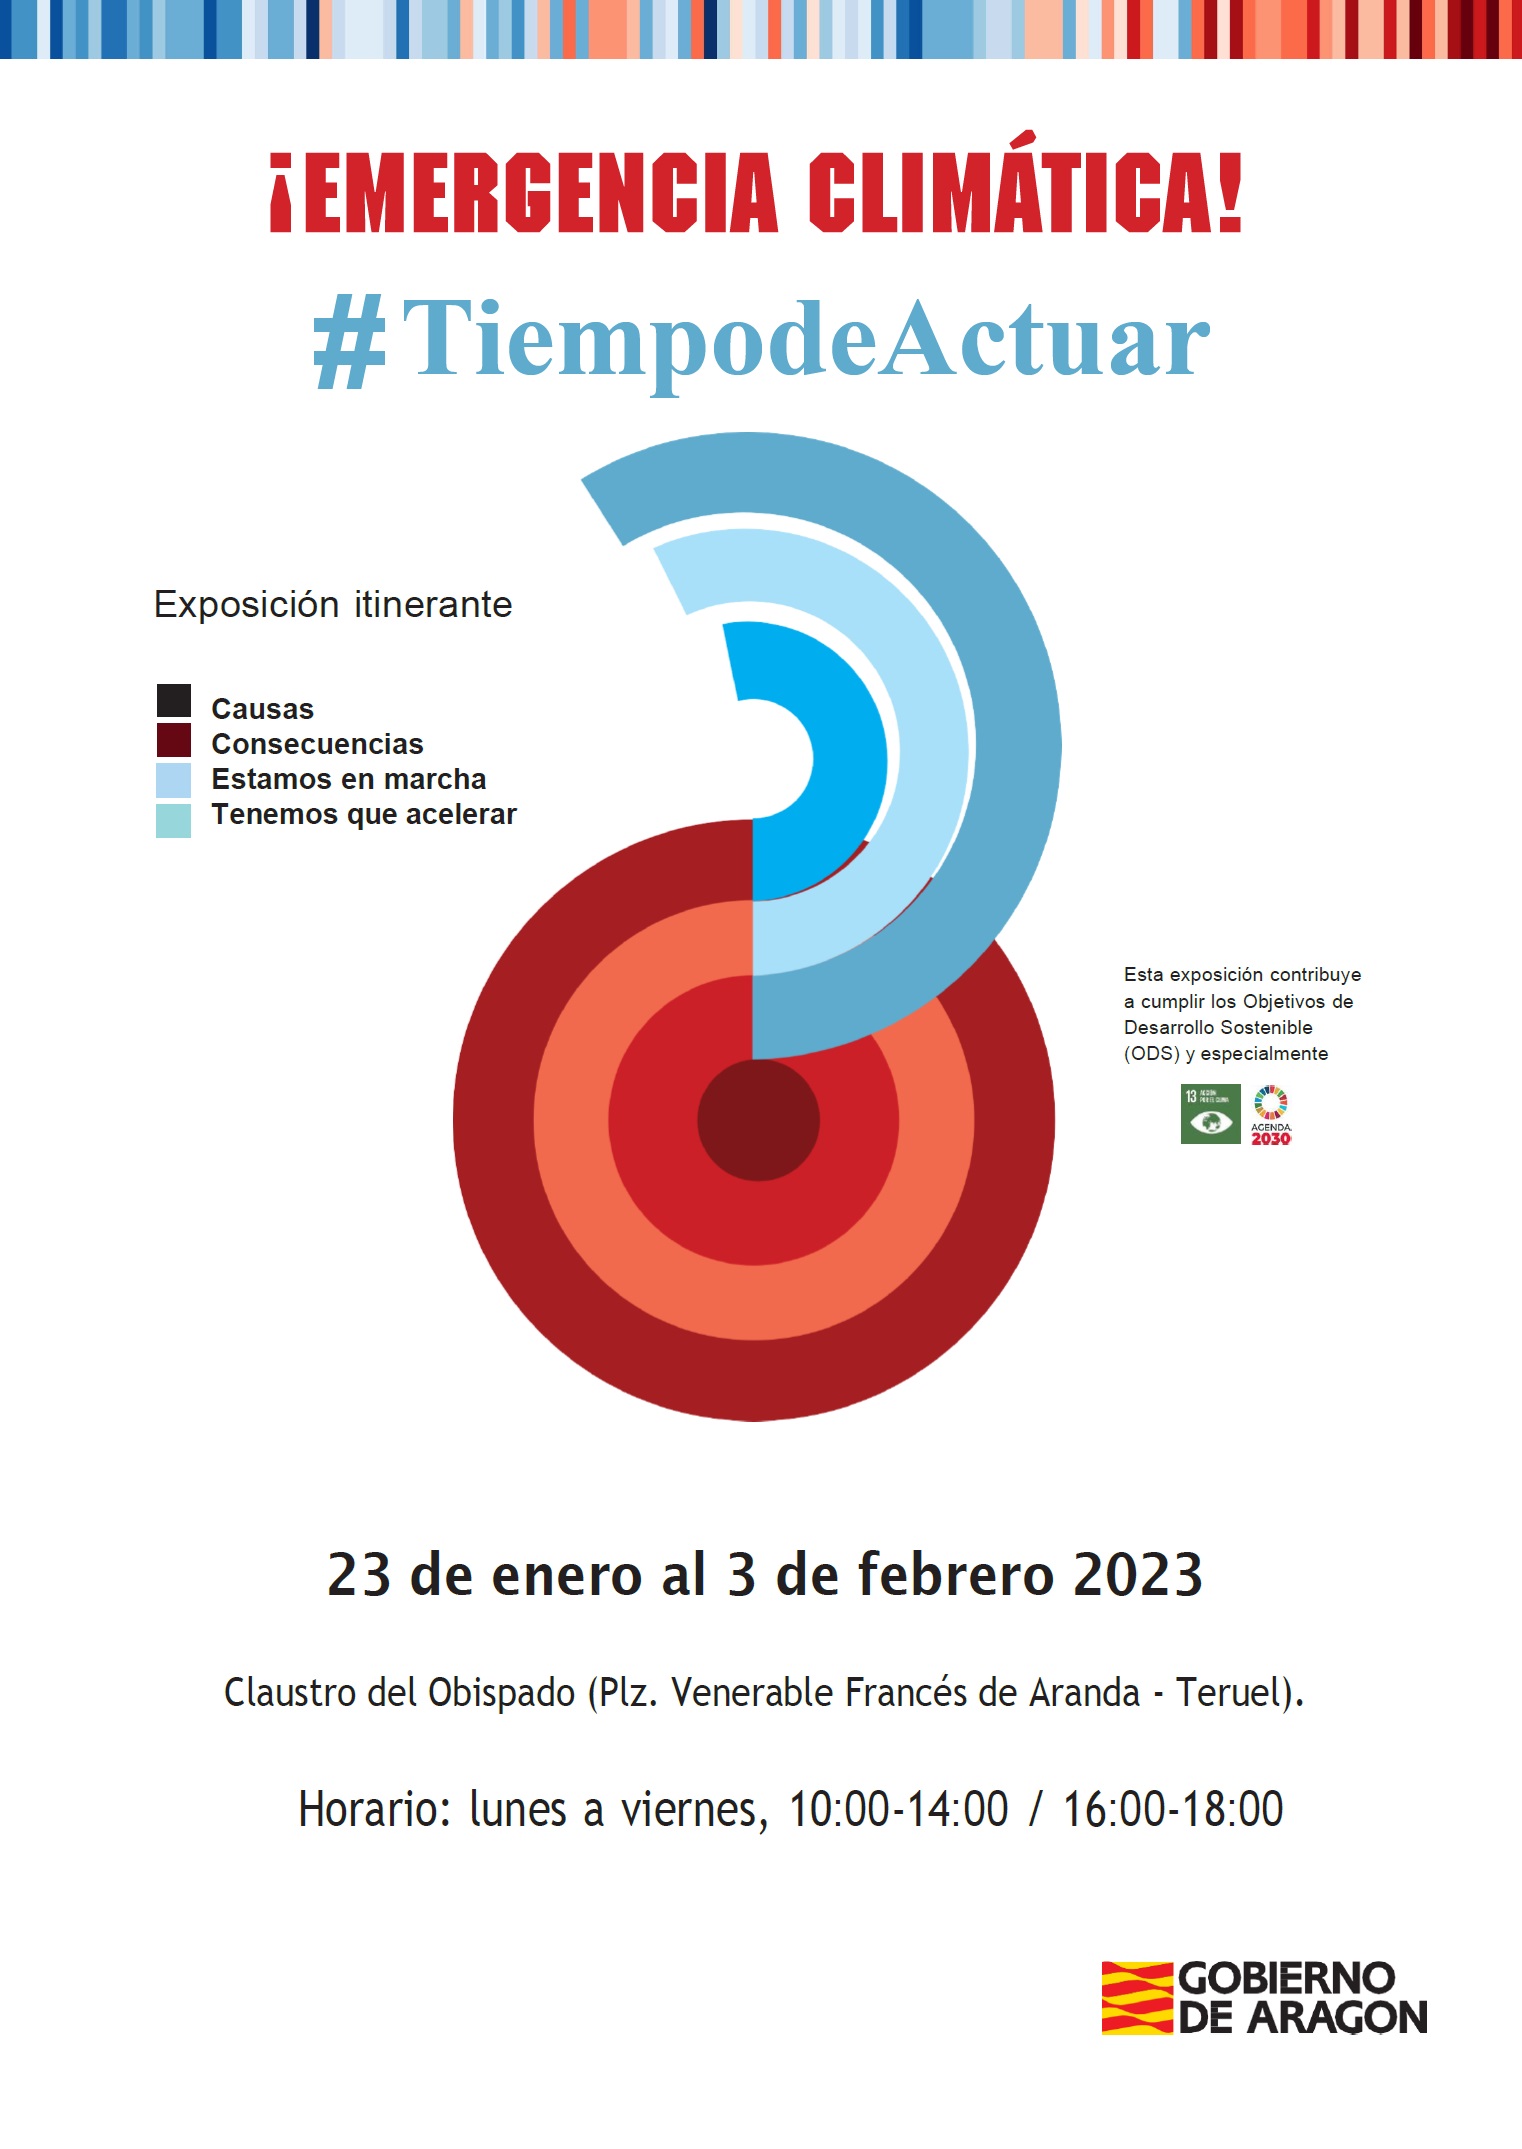 La exposiciÃ³n "Â¡Emergencia ClimÃ¡tica! #TiempodeActuar" ya se puede visitar en el Claustro del Obispado de Teruel